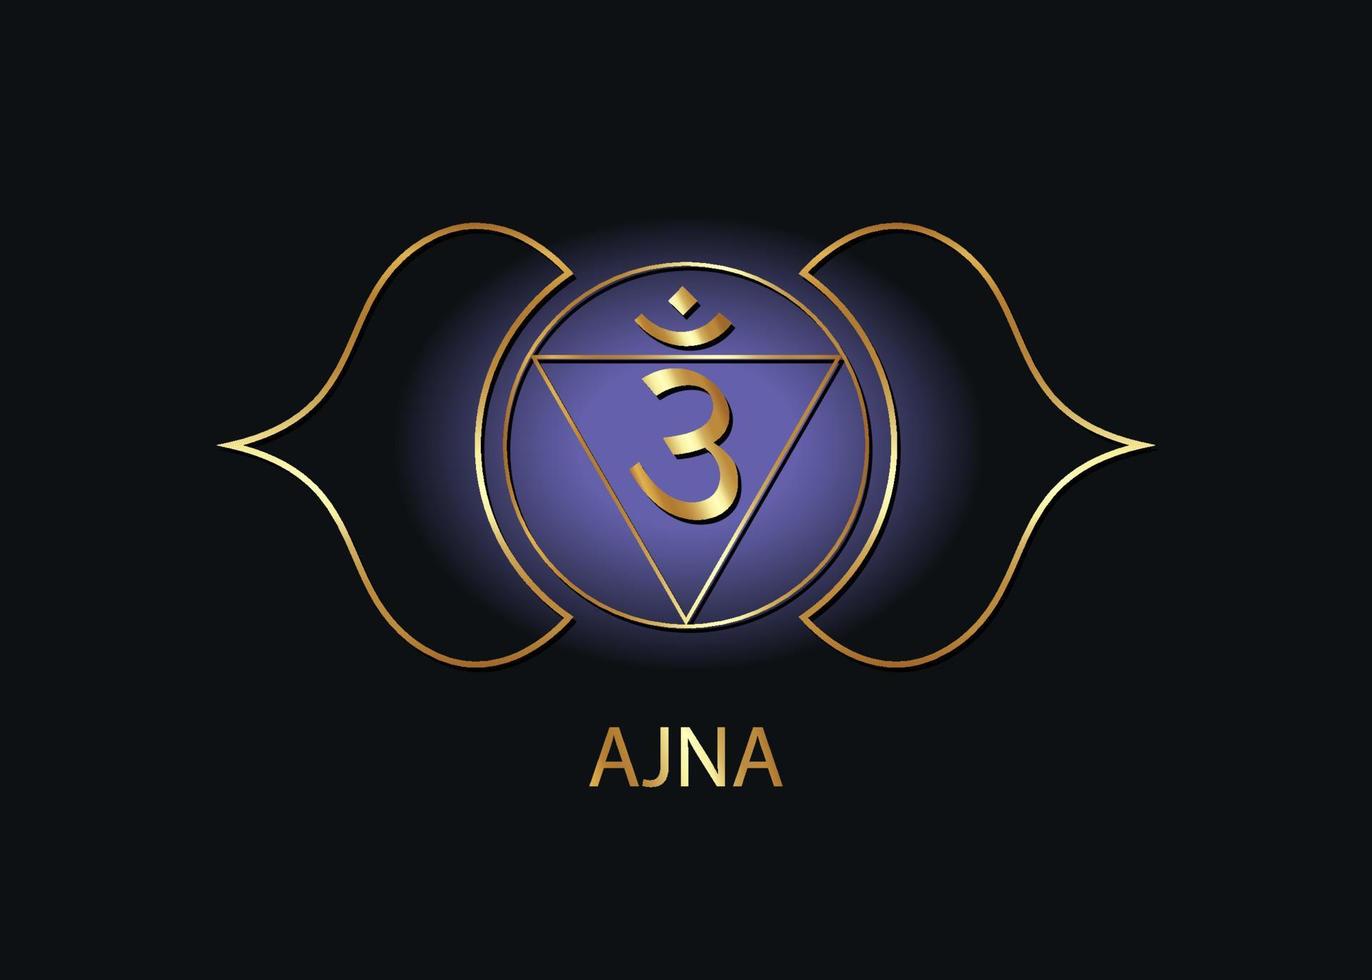 tredje ögat chakra ajna logotyp mall. det sjätte frontalchakrat, sakral guldteckenmeditation, yogablå och lila rund mandalaikonvektor isolerad på svart bakgrund vektor